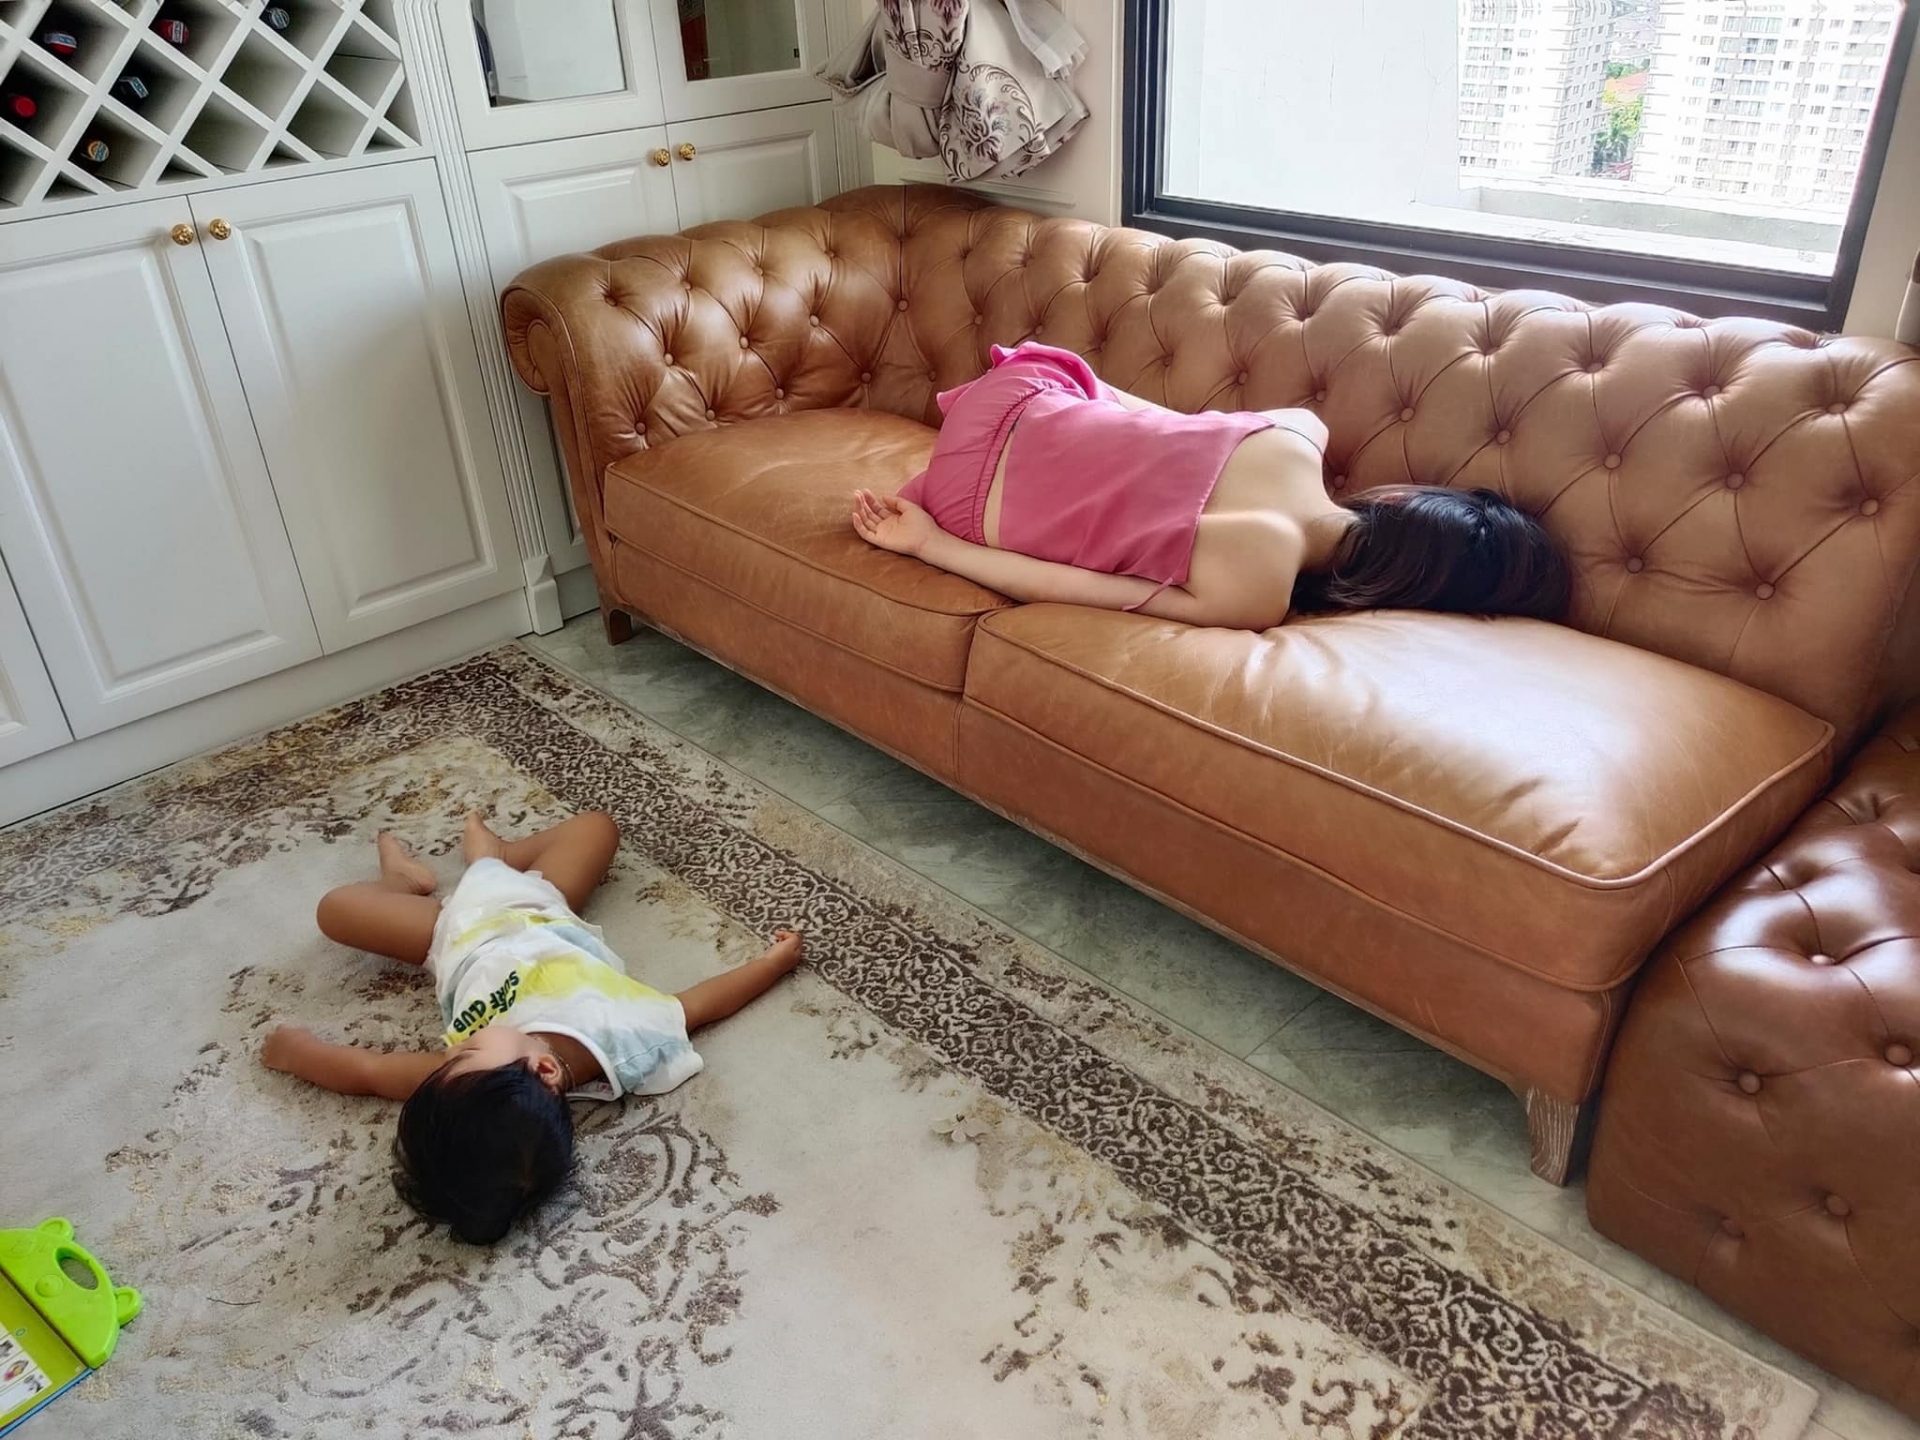 Hòa Minzy ôm con ngủ trên ghế và cái kết - Ảnh 1